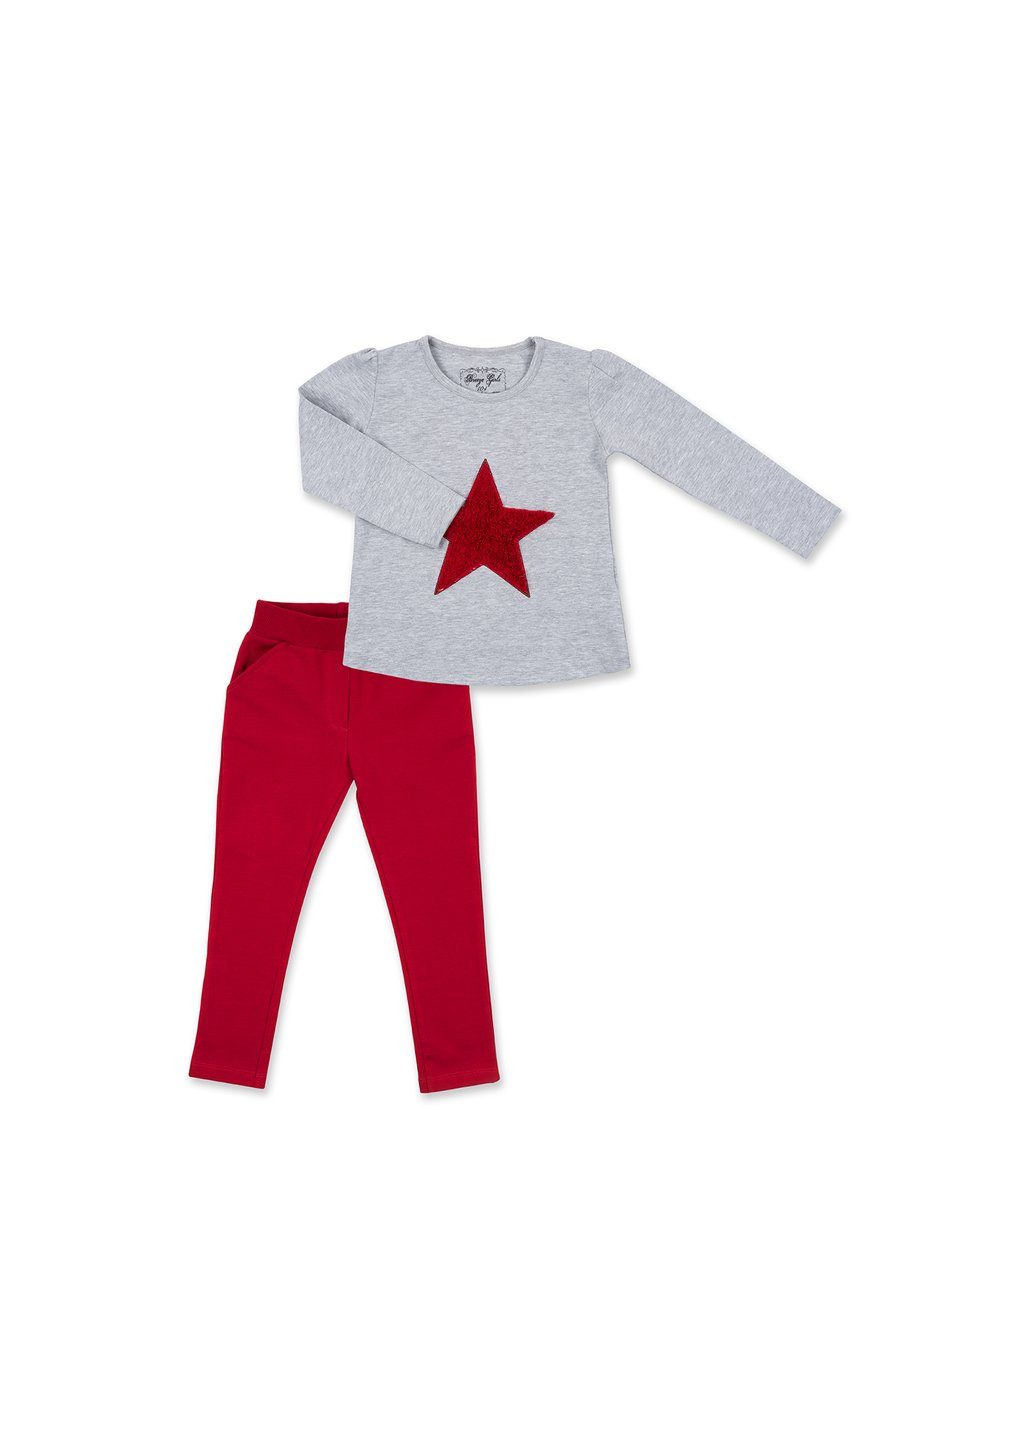 Комбинированный демисезонный набор детской одежды с объемной аппликацией (8401-104g-gray) Breeze